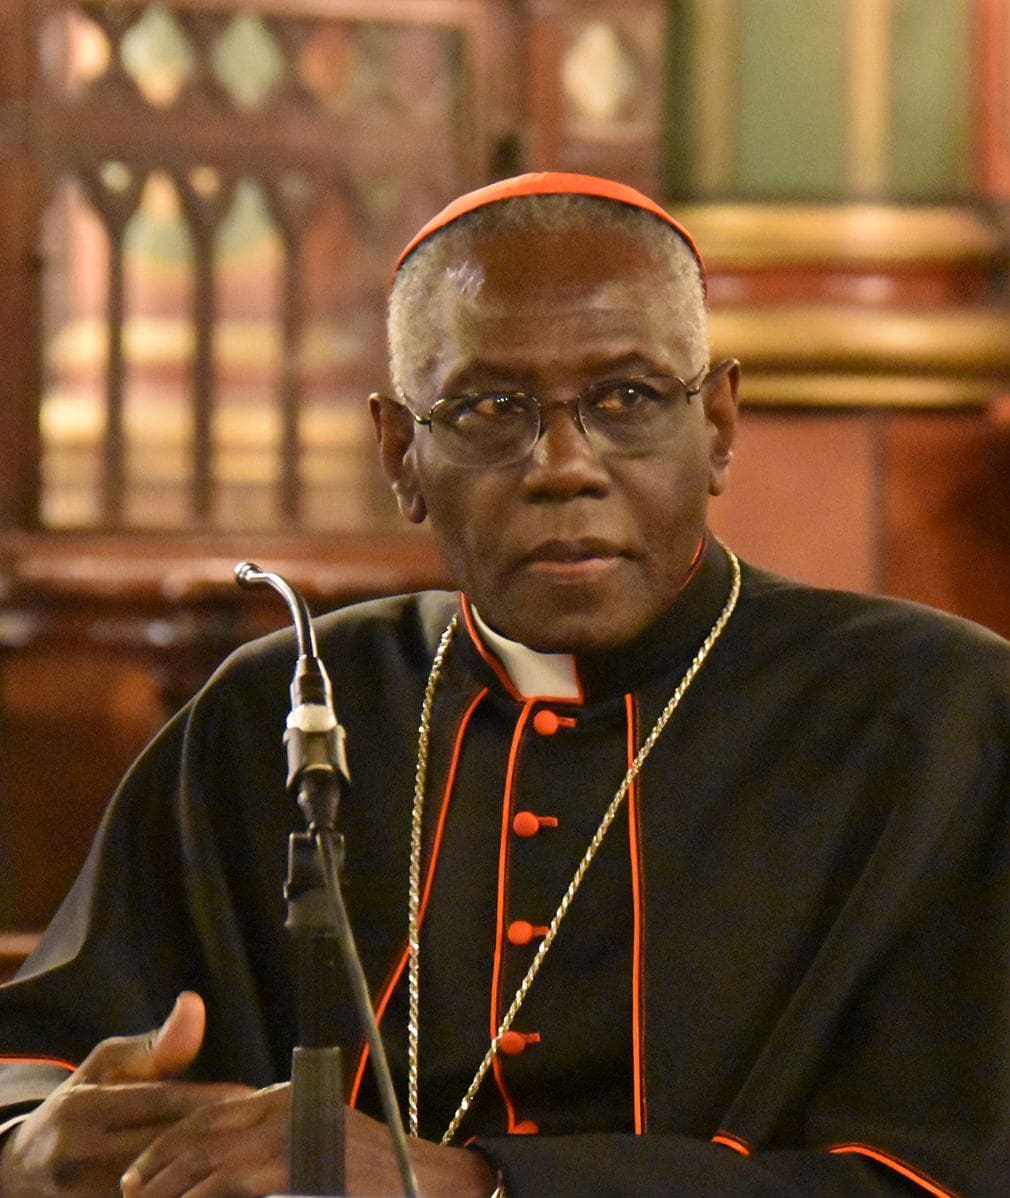 Cardinal Sarah Turns 75, Remains Head of Vatican Liturgy Department